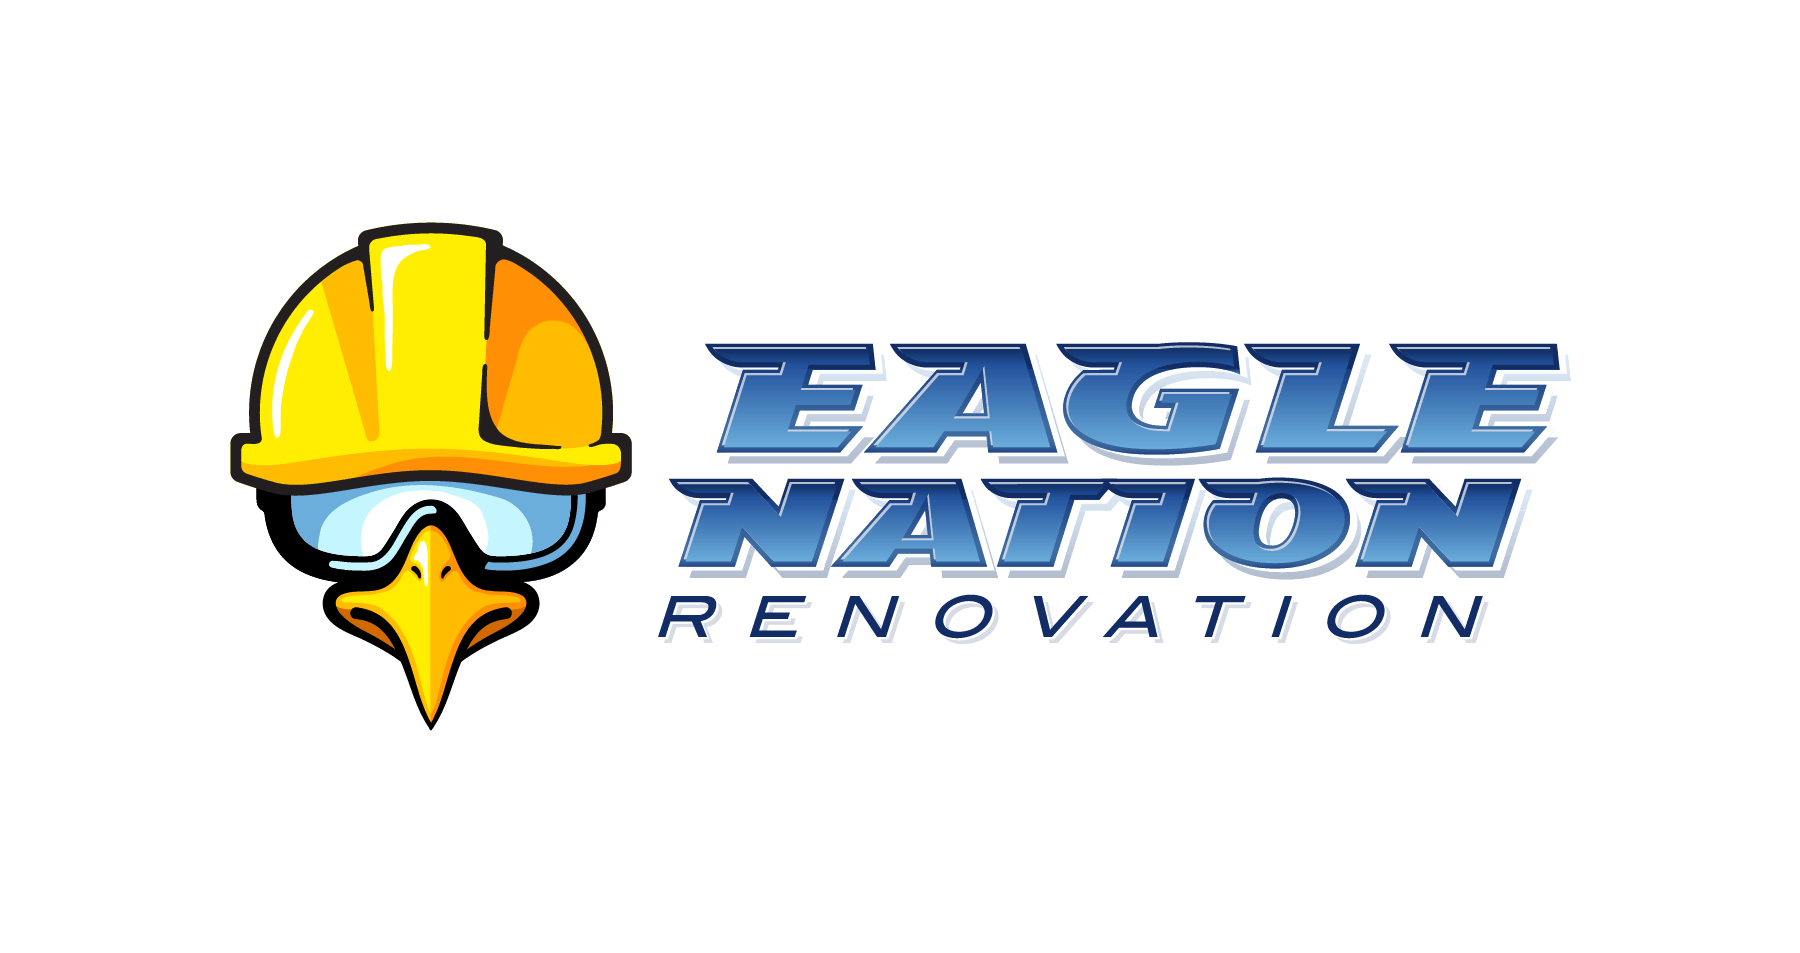 Eagle Nation Logo - R.S. Chandler. Eagle Nation Renovation